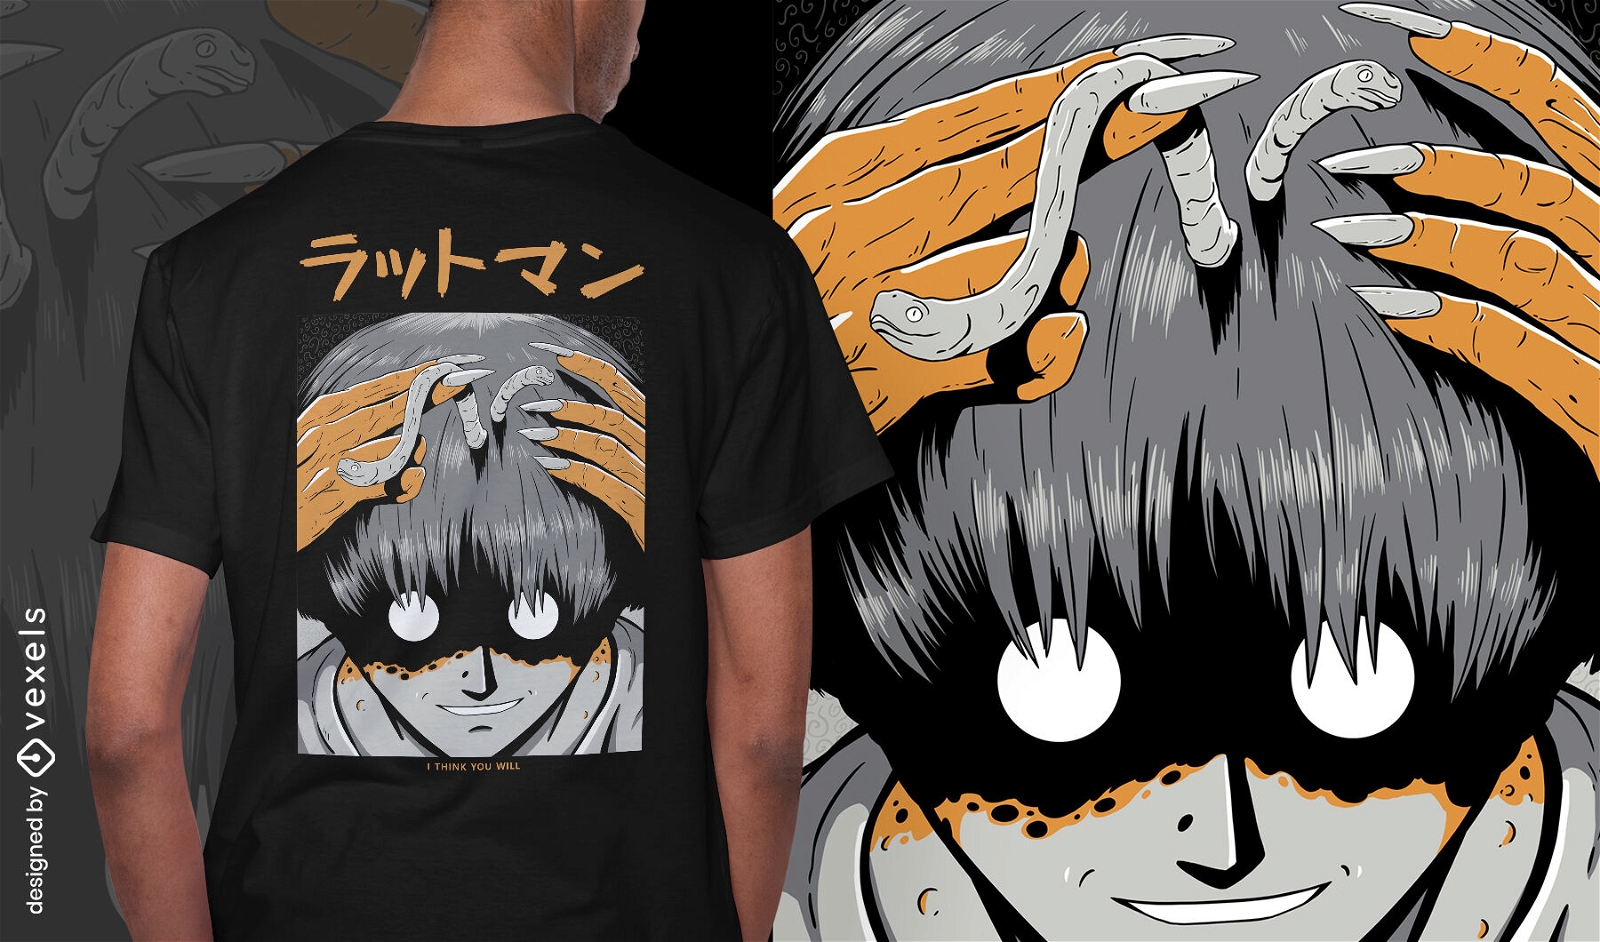 Japanisches Halloween-Monster gruseliges T-Shirt-Design